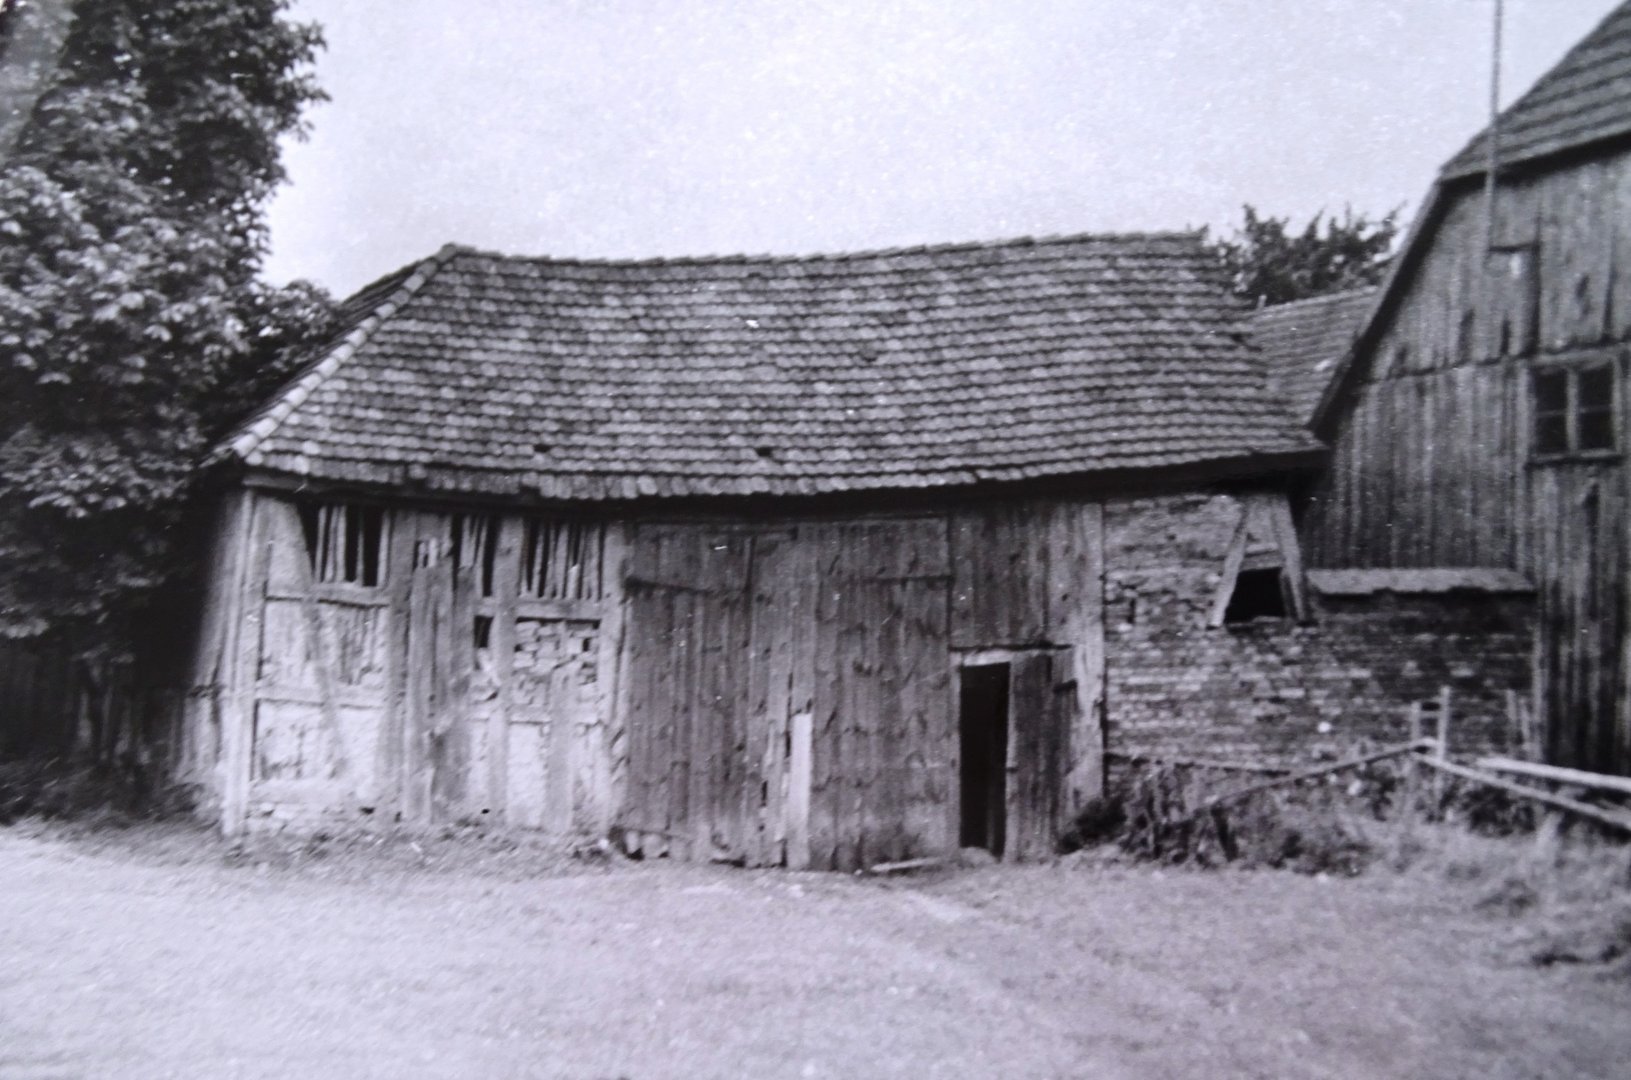 Zdjęcie 6. Niezachowany budynek gospodarczy, widok od strony pola, 1972 r.